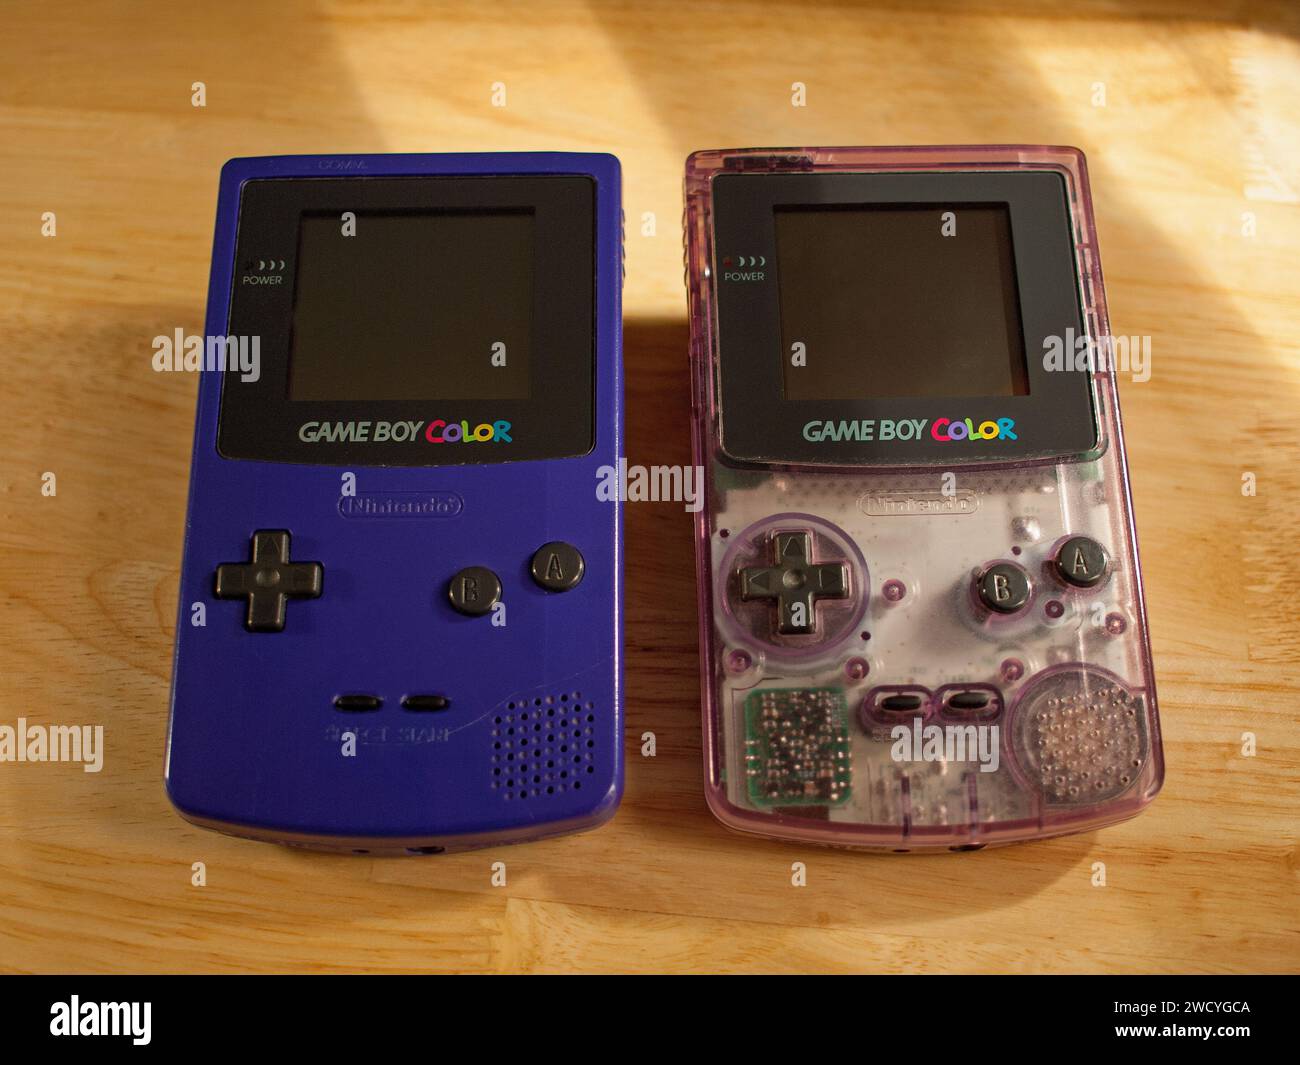 Miami, Florida, Stati Uniti - 26 novembre 2023: Due console per videogiochi portatili Nintendo Game Boy Color vintage. Modelli a colori Atomic Purple e Grape. Foto Stock